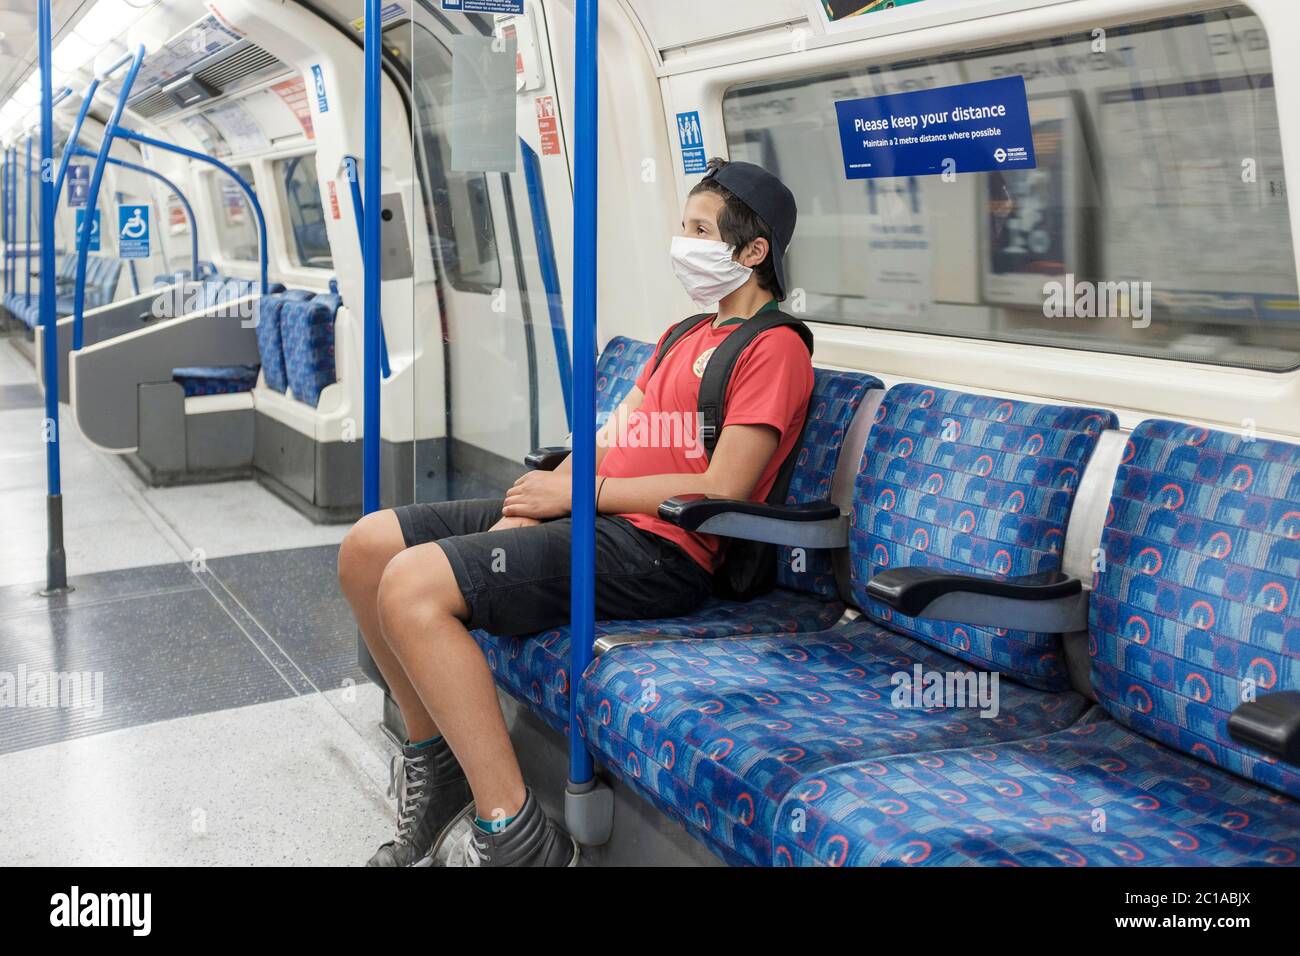 Londres, Royaume-Uni.15th juin 2020.Coronavirus: Couvertures de visage maintenant obligatoire sur les transports publics.garçon portant un masque voyage sur Londres Undergound. Banque D'Images